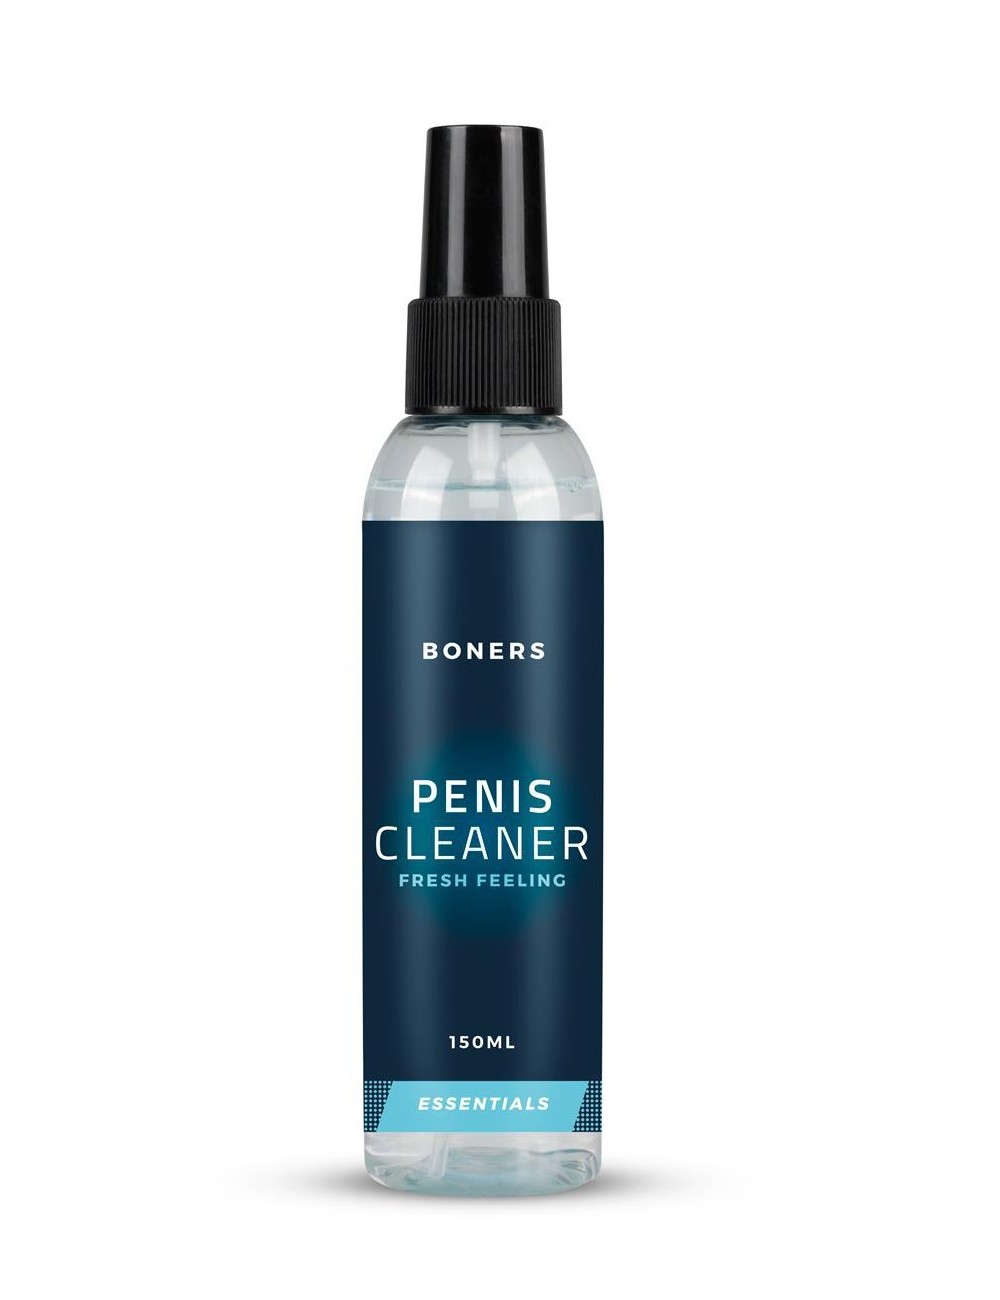 Penis Cleaner - Boners